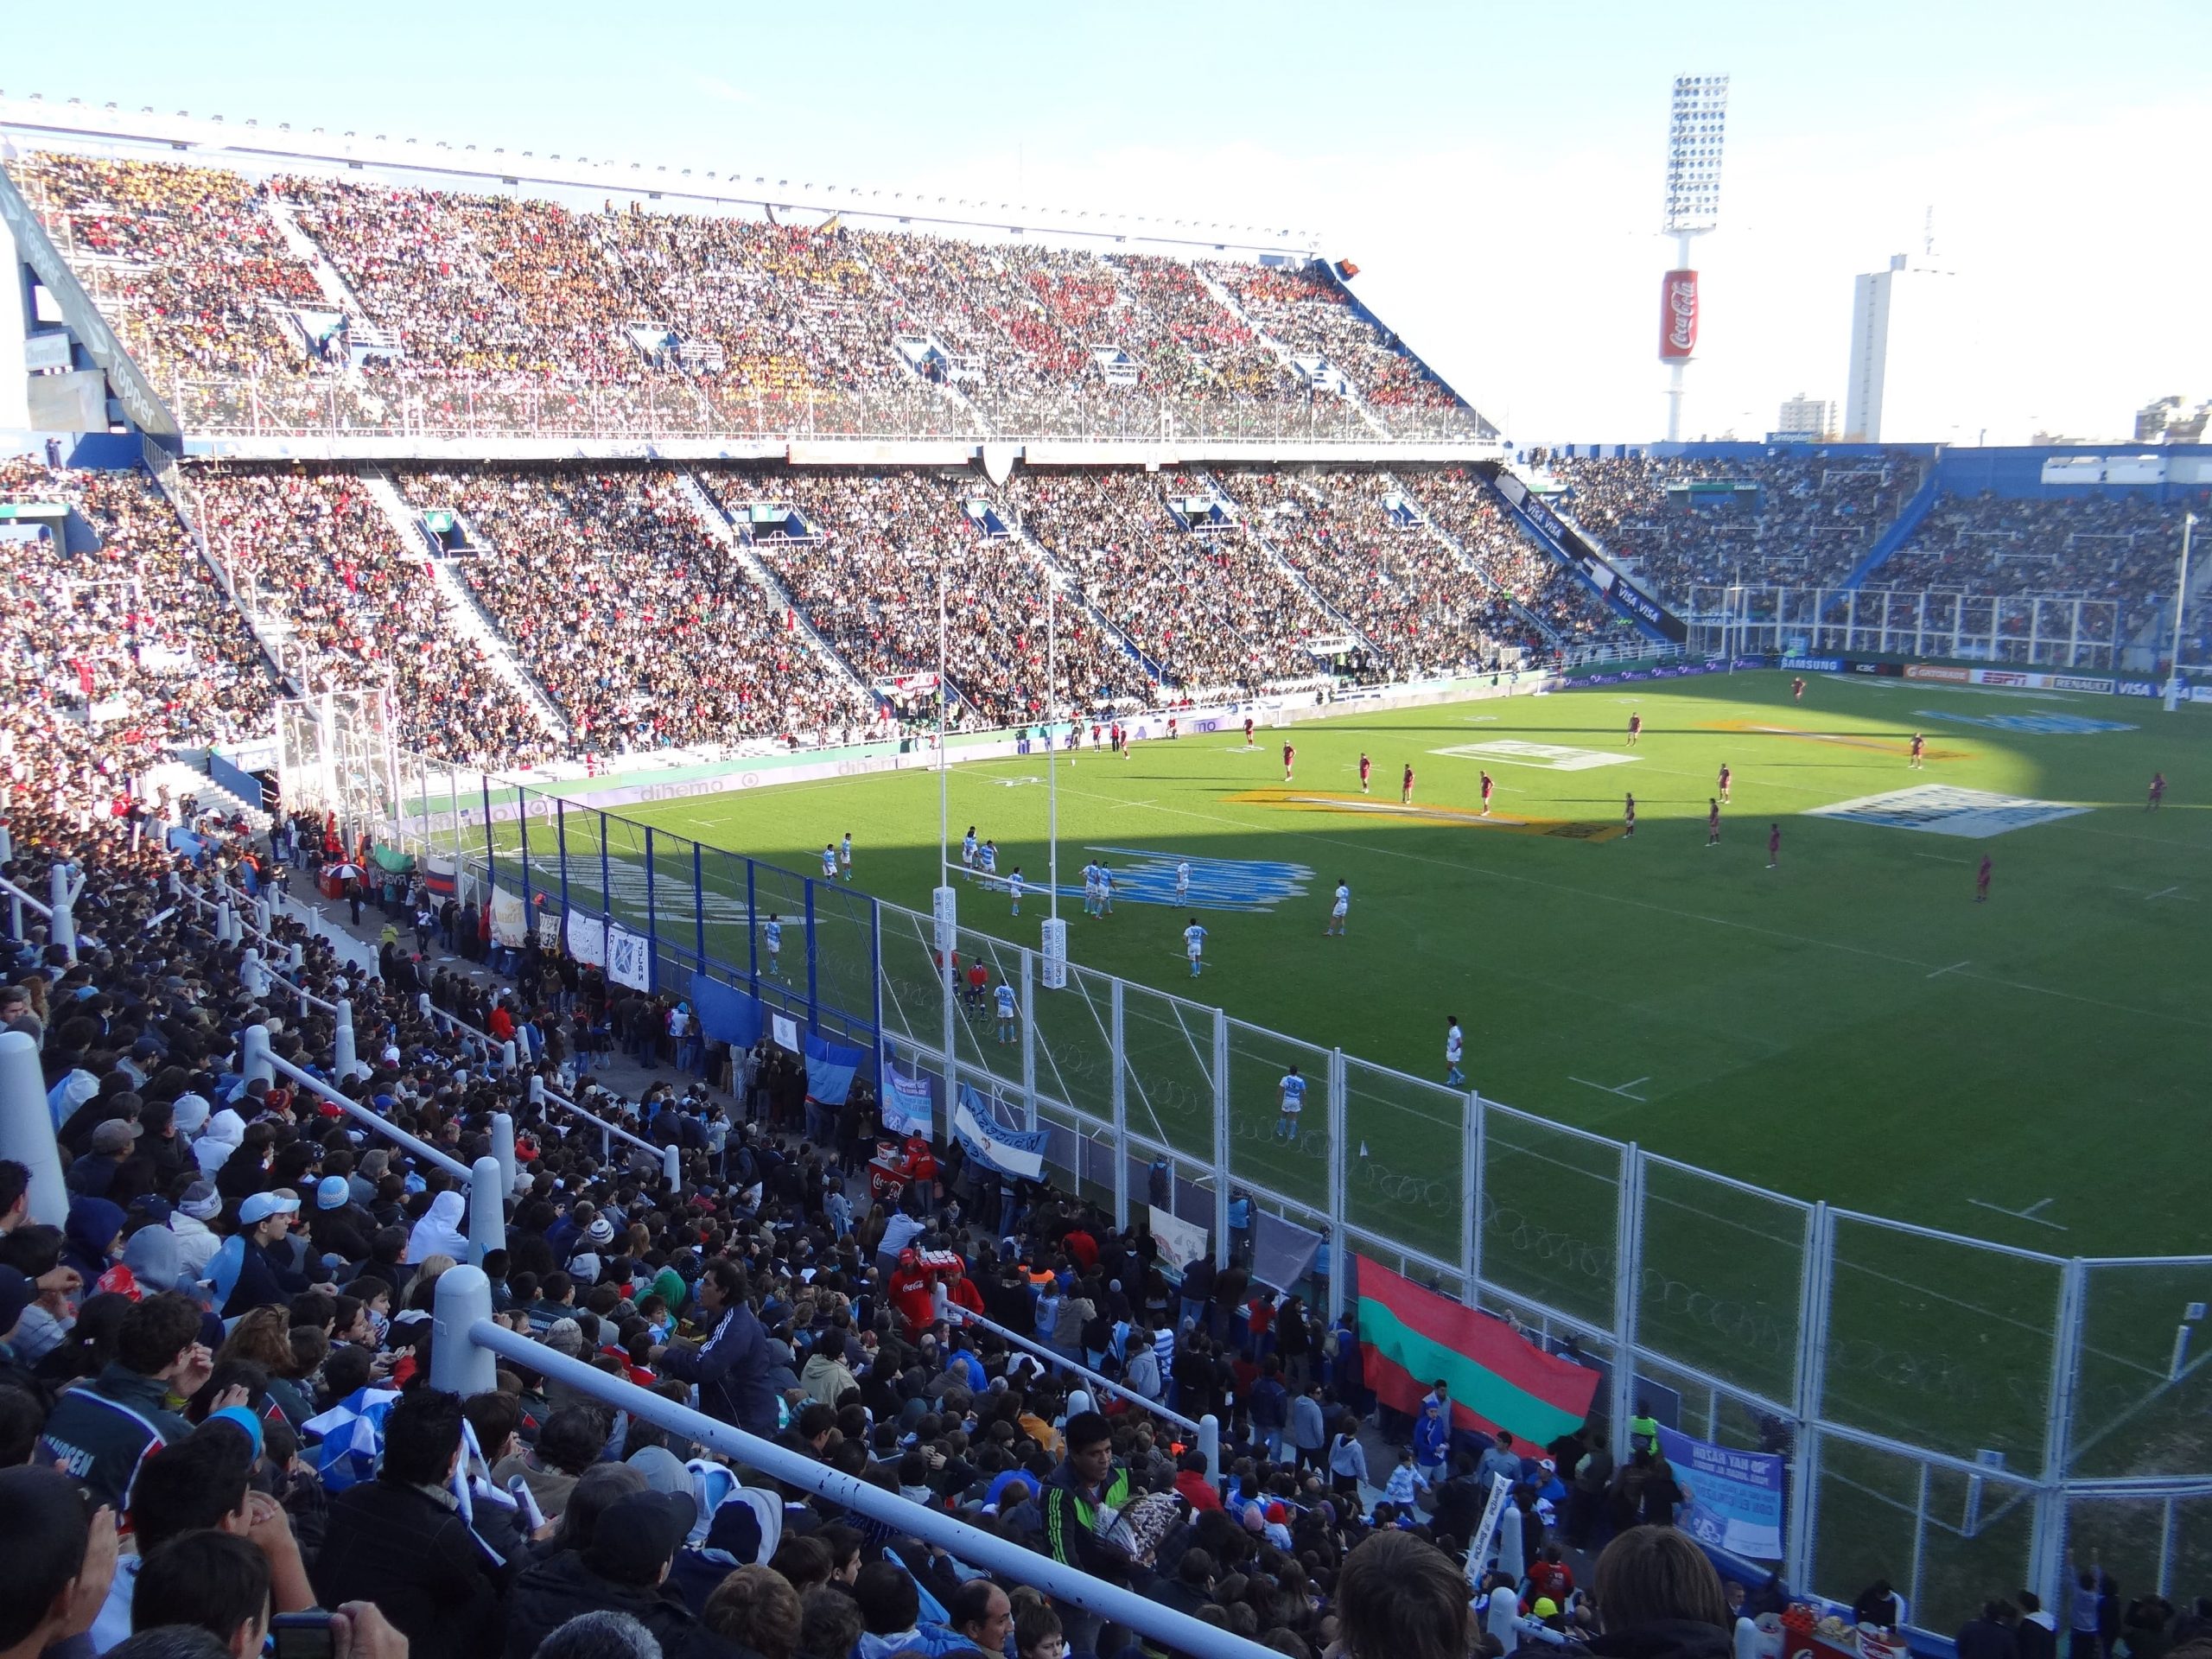 สนามแข่ง : Estadio José Amalfitani